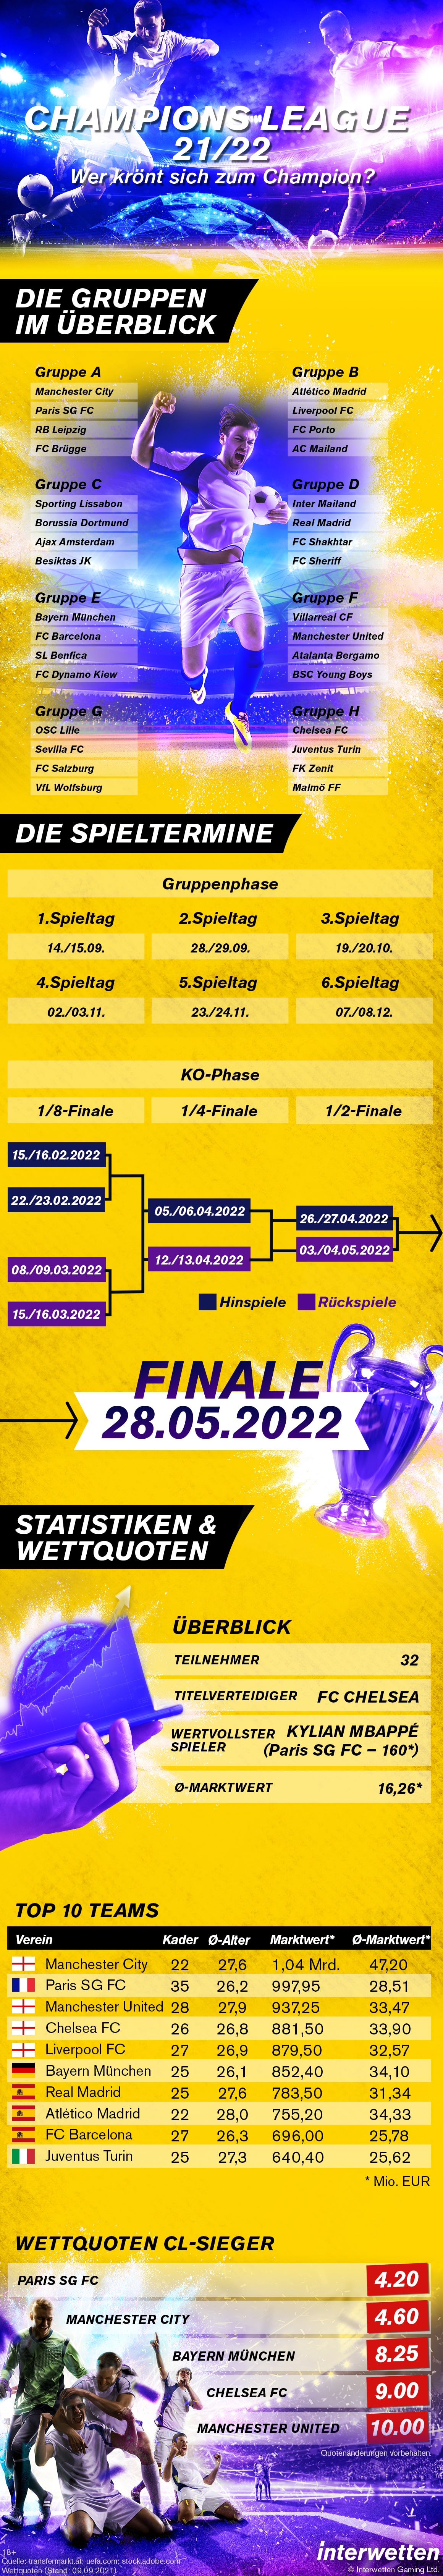 Infografik Champions League 2021/22